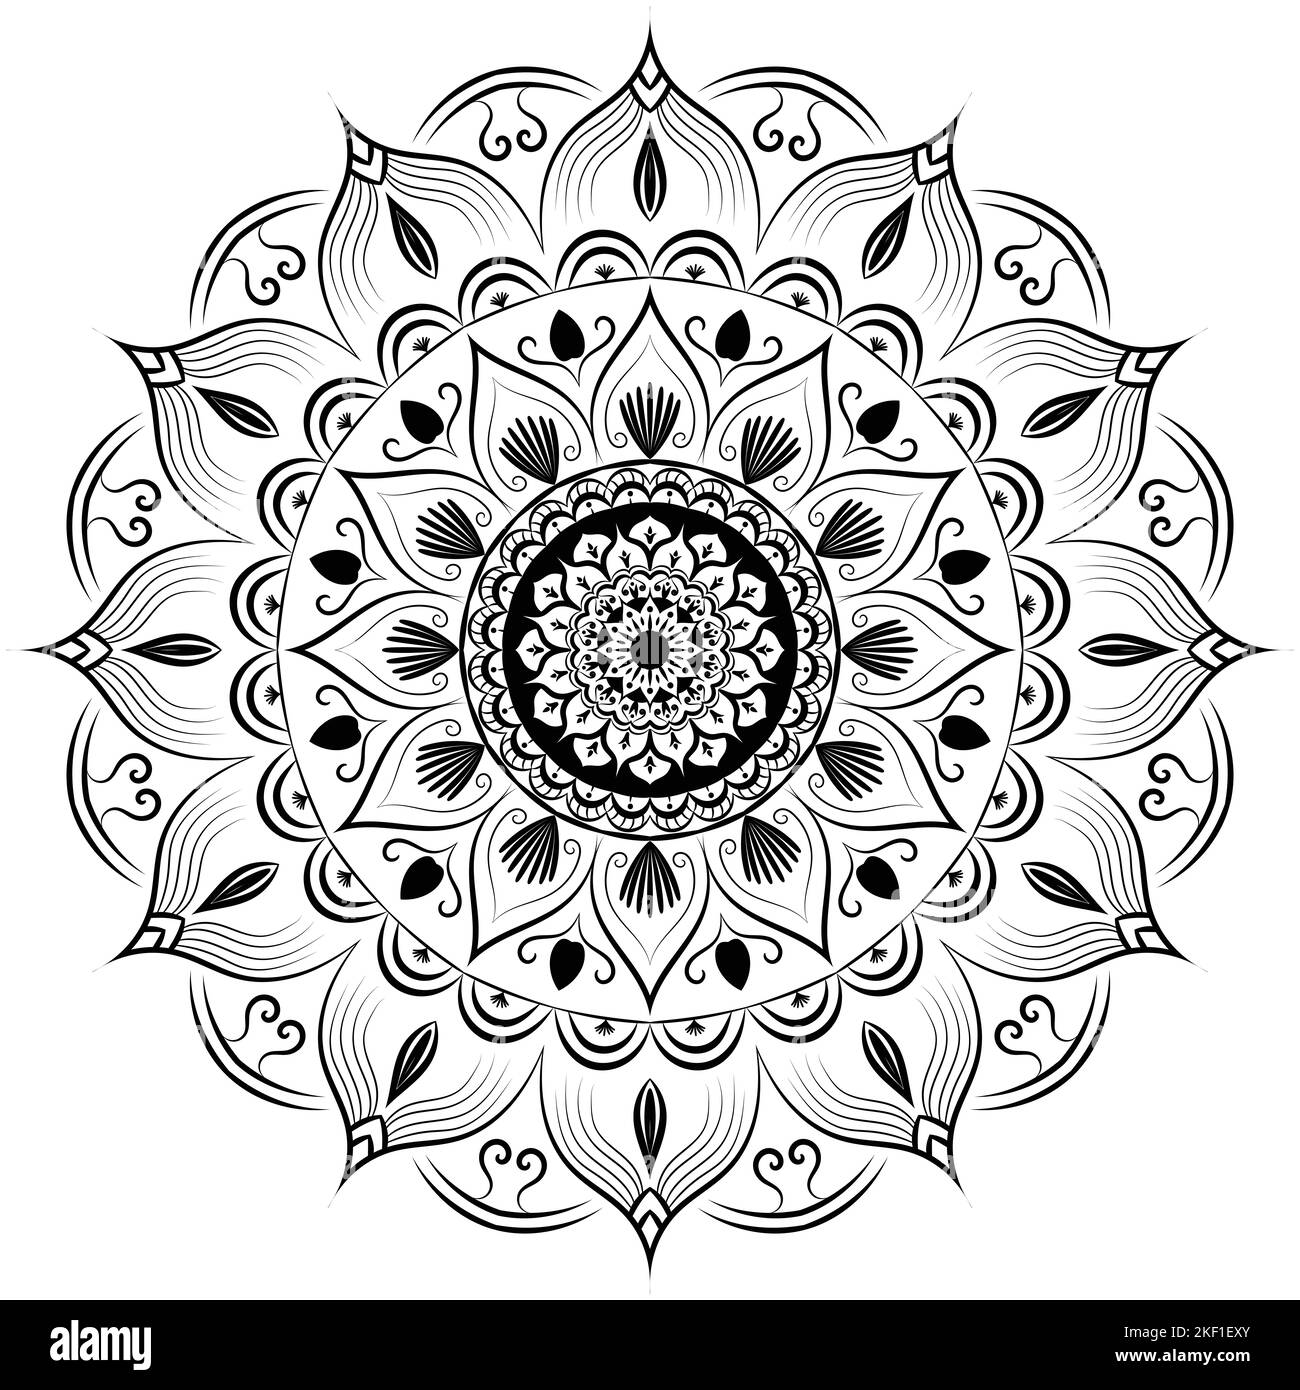 Schöne Kreis Muster floralen Mandala Kunst isoliert auf einem weißen Hintergrund, Dekorationselemente für Meditation Poster oder Banner, Henna, Tattoo-Kunst, Stockfoto